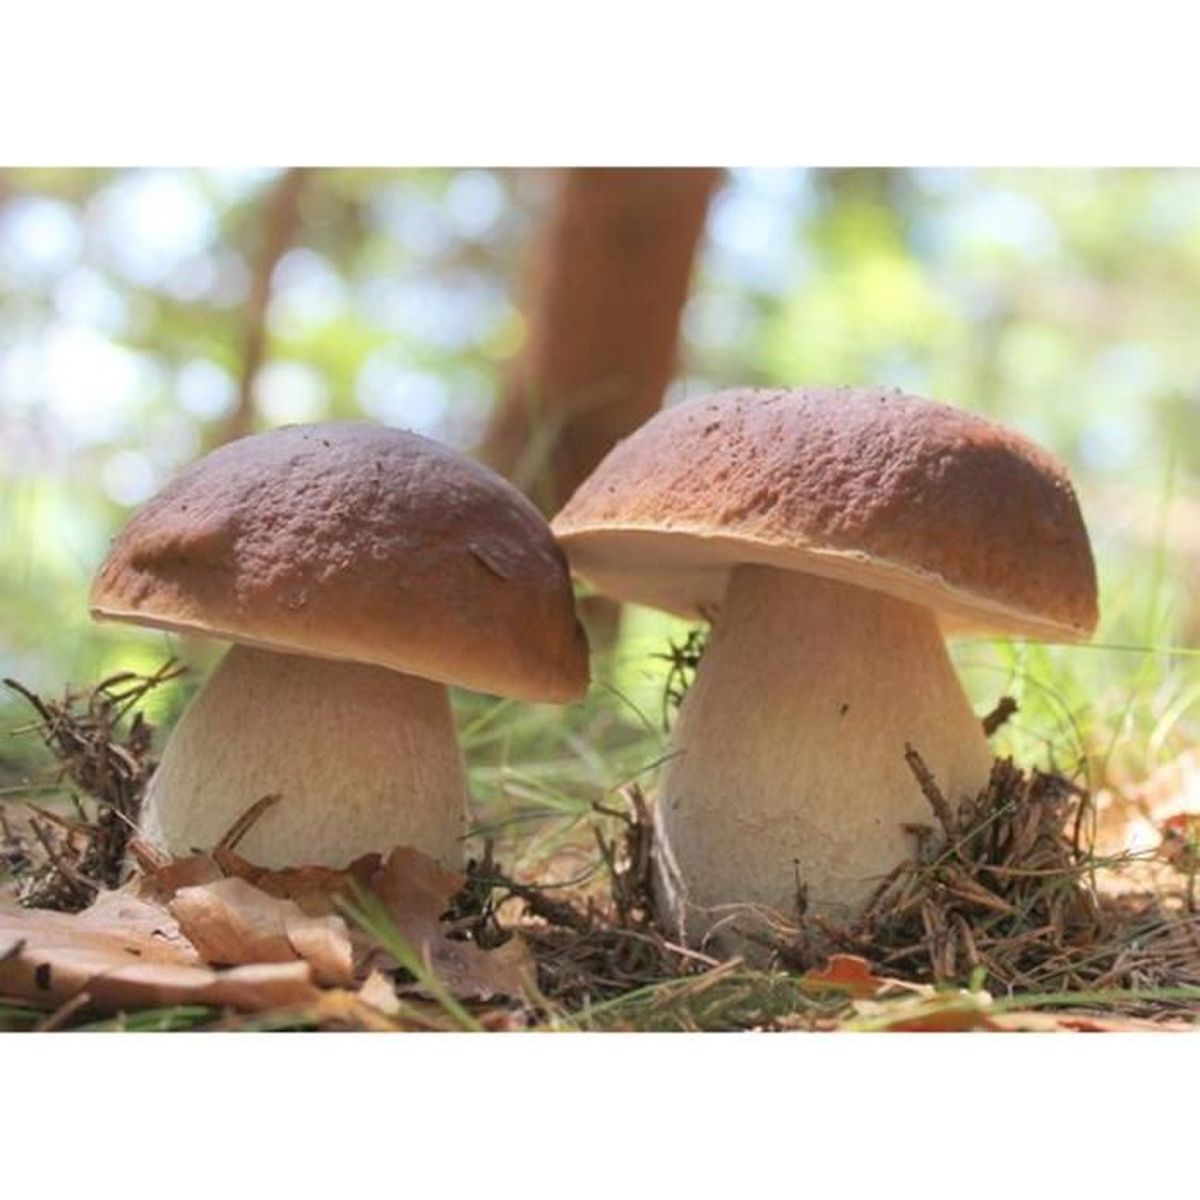 Acheter en gros des sacs pour la culture des champignons - Polybags